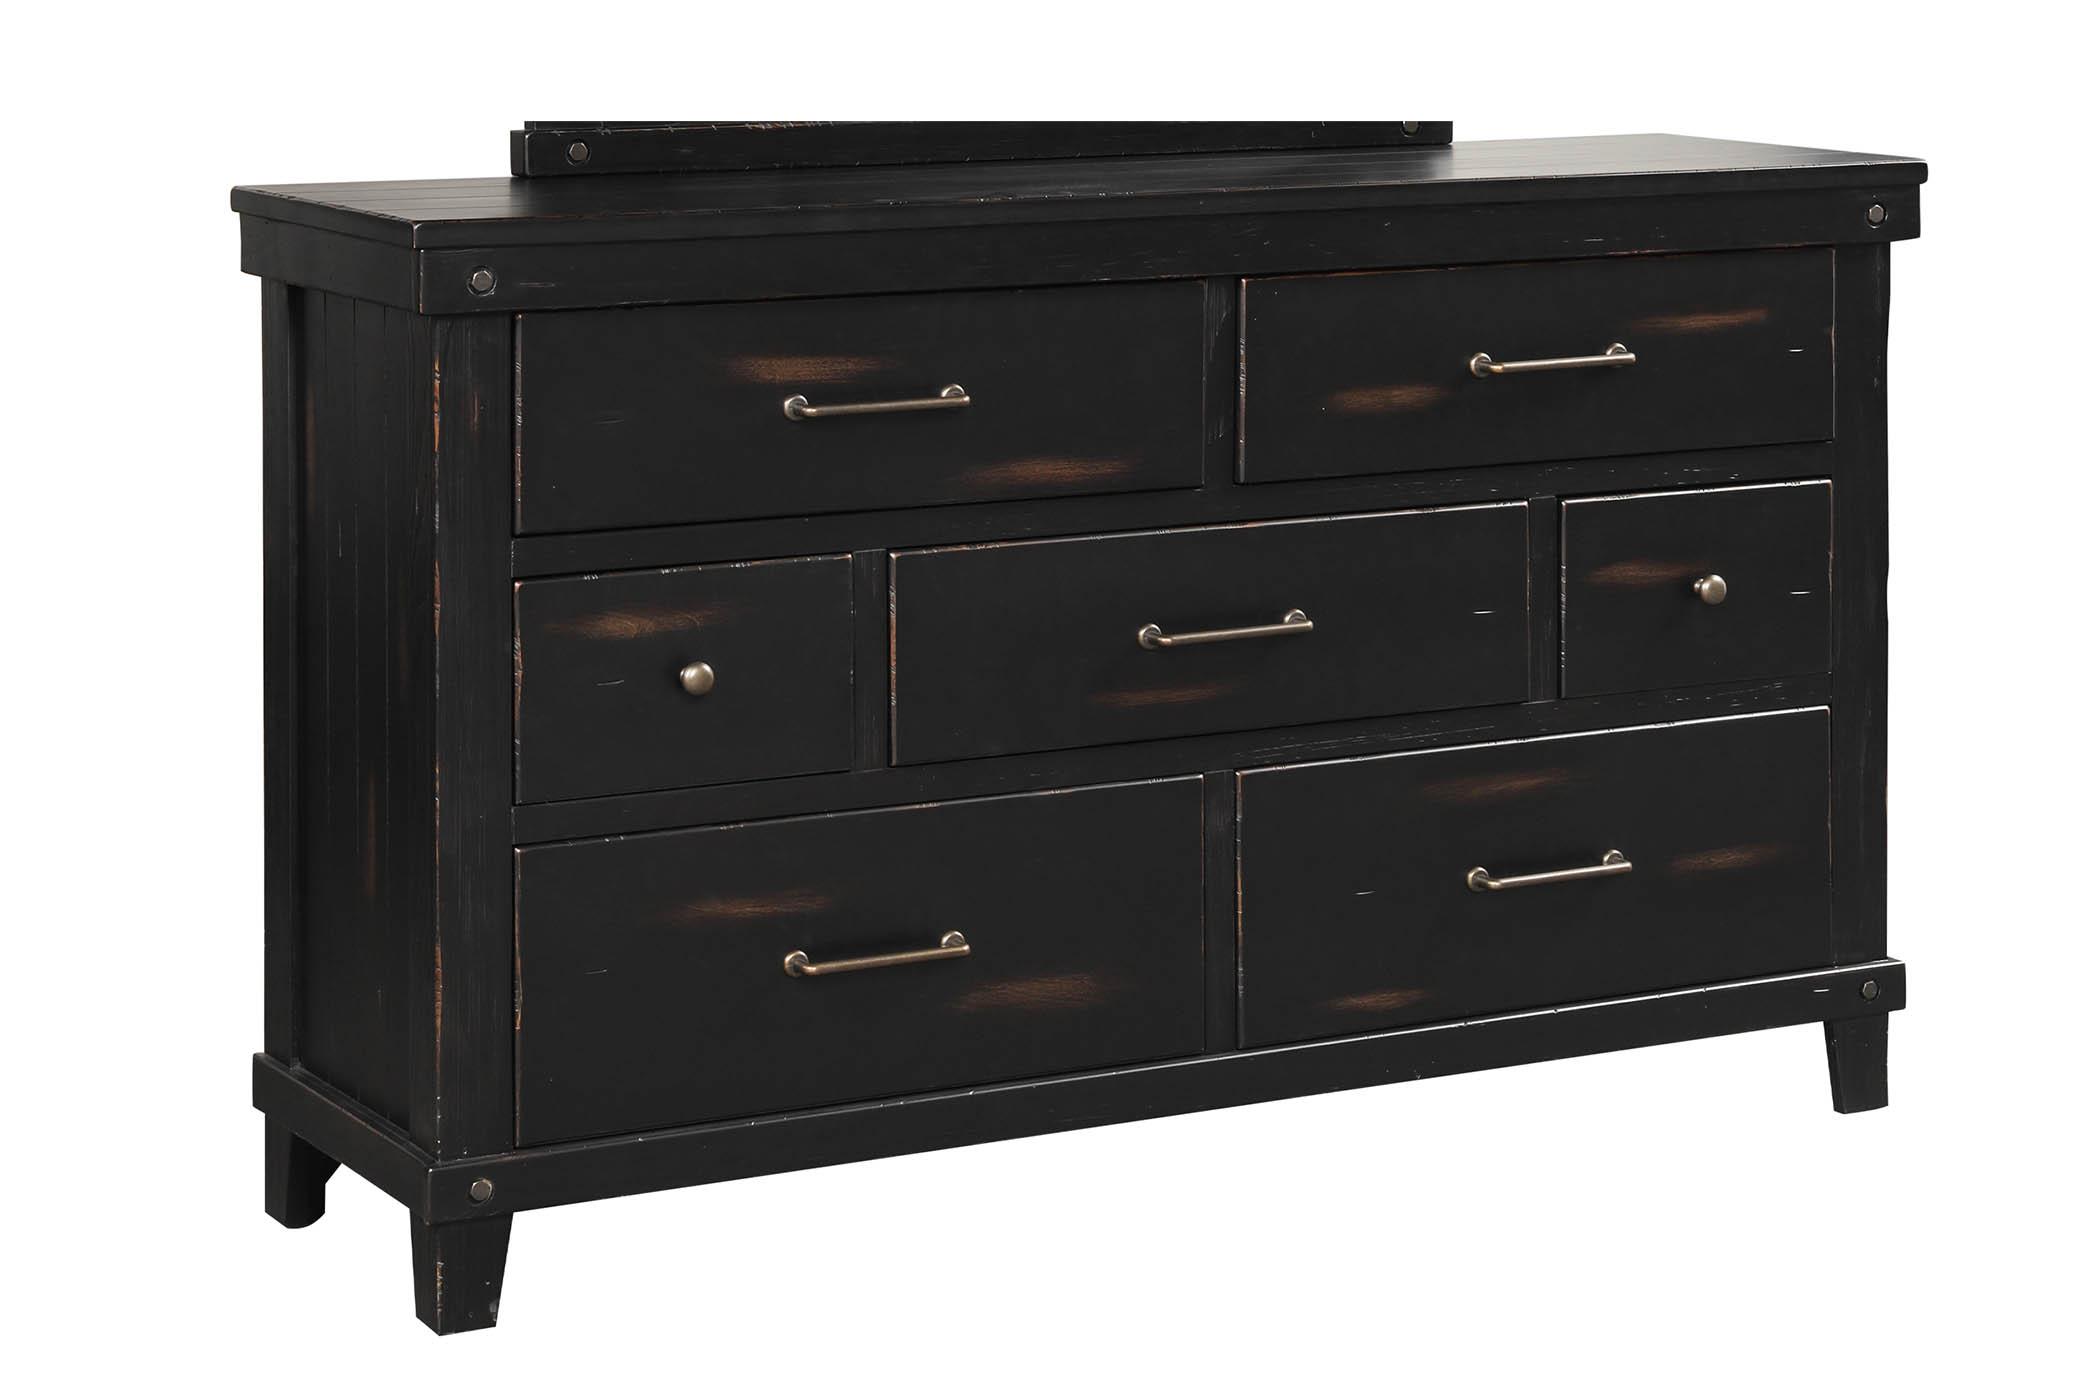 Classic, Transitional Dresser SPRUCE CREEK 1708-130 1708-130 in Black 